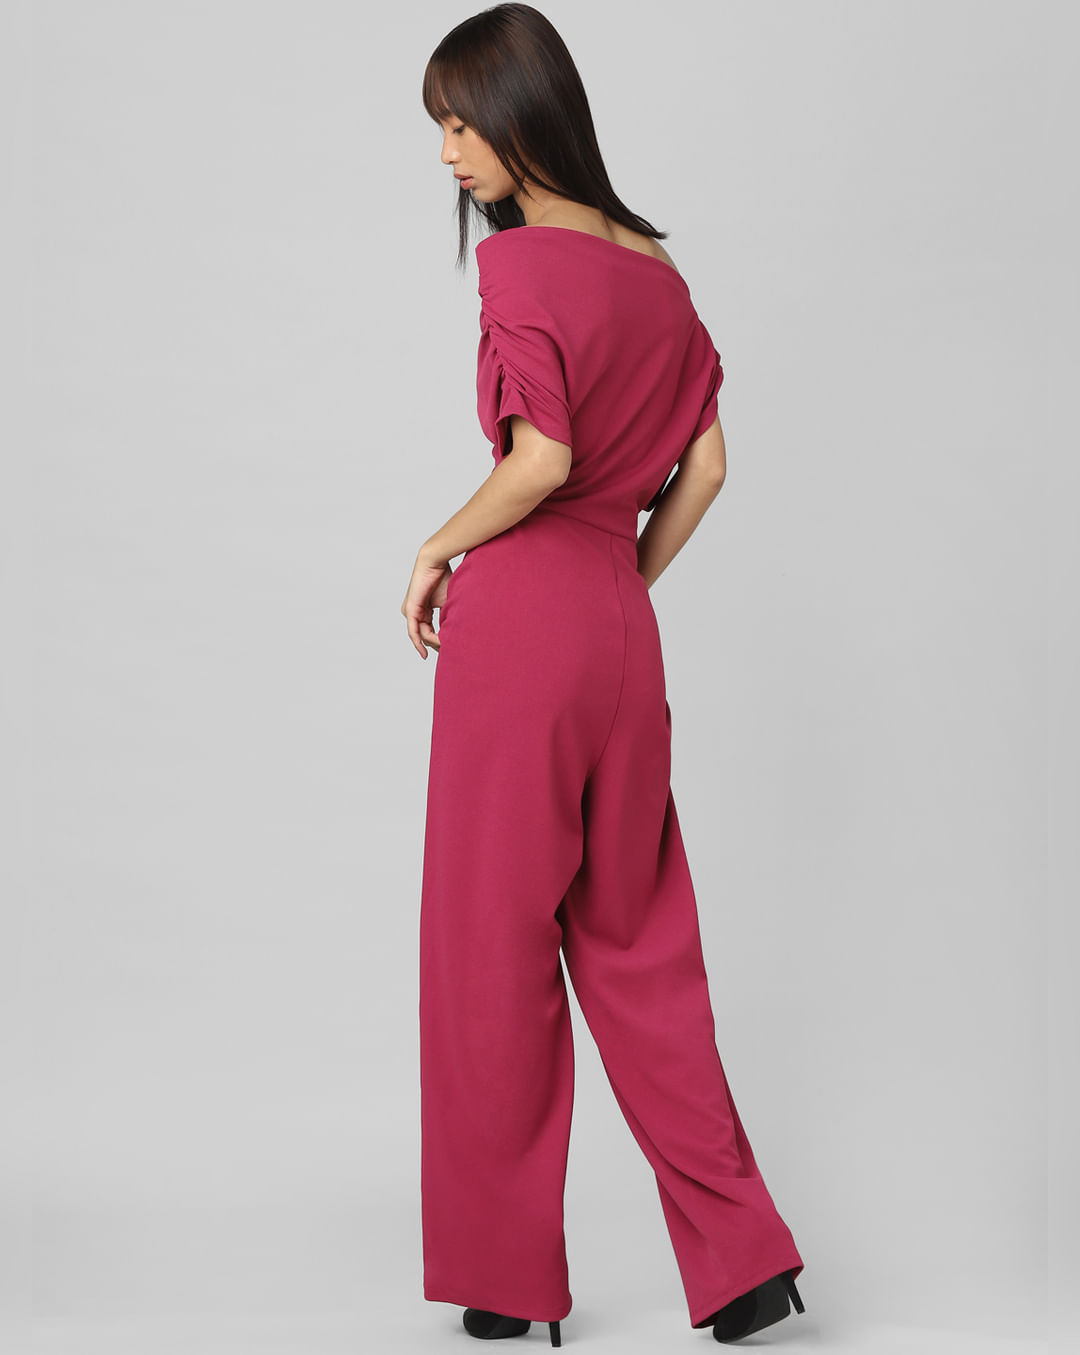 Buy Pink One Shoulder Jumpsuit for Women Online